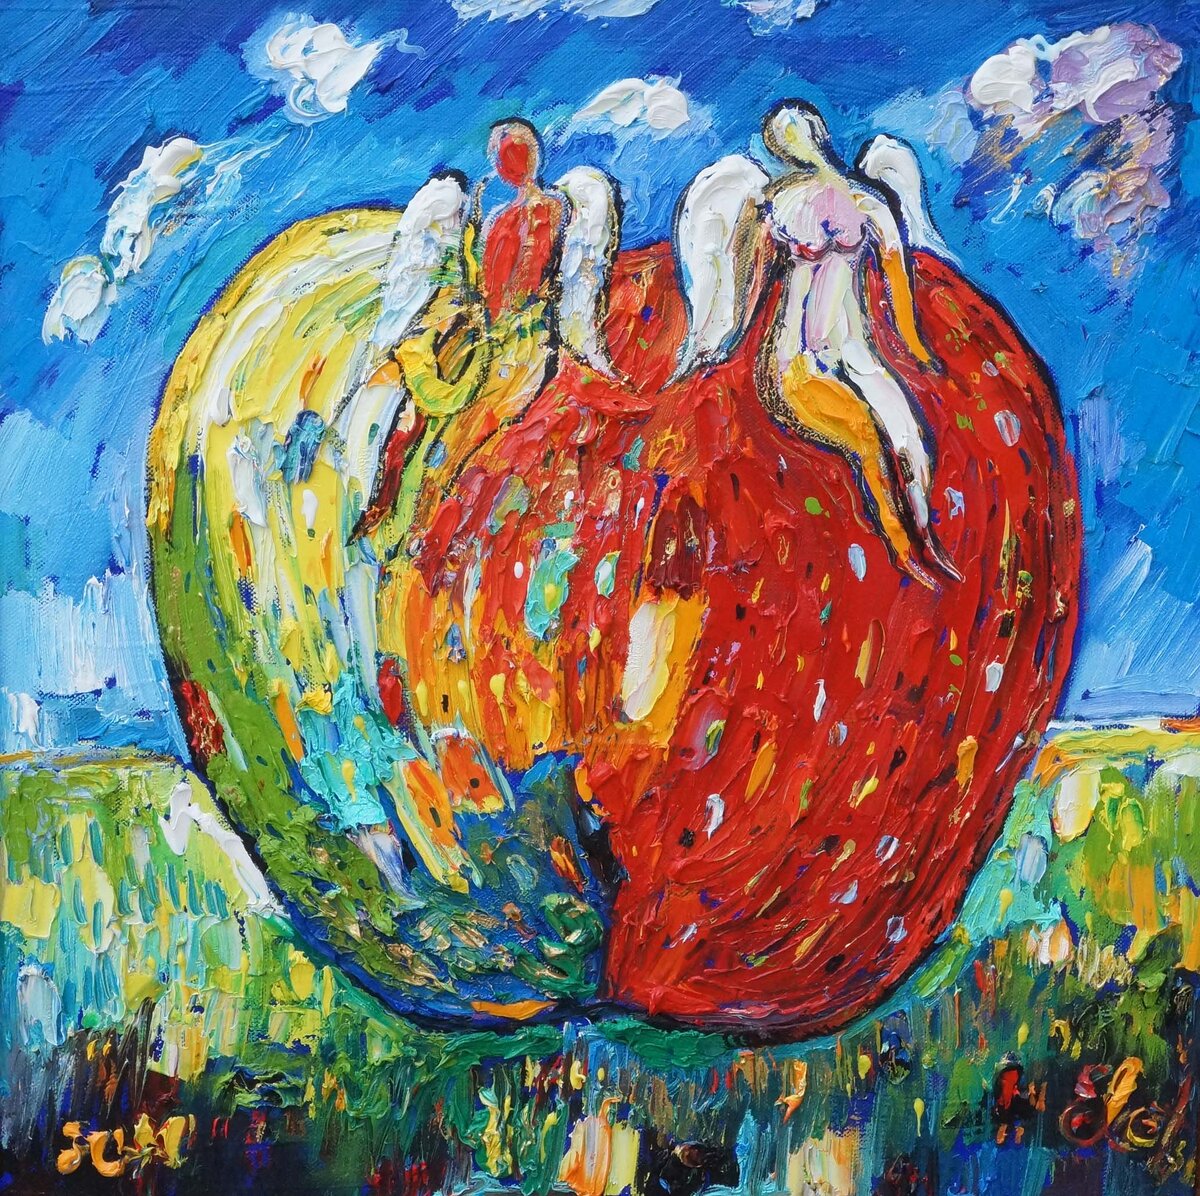 Аукцион картин «Яблочный мёд-22". 26 08 2022